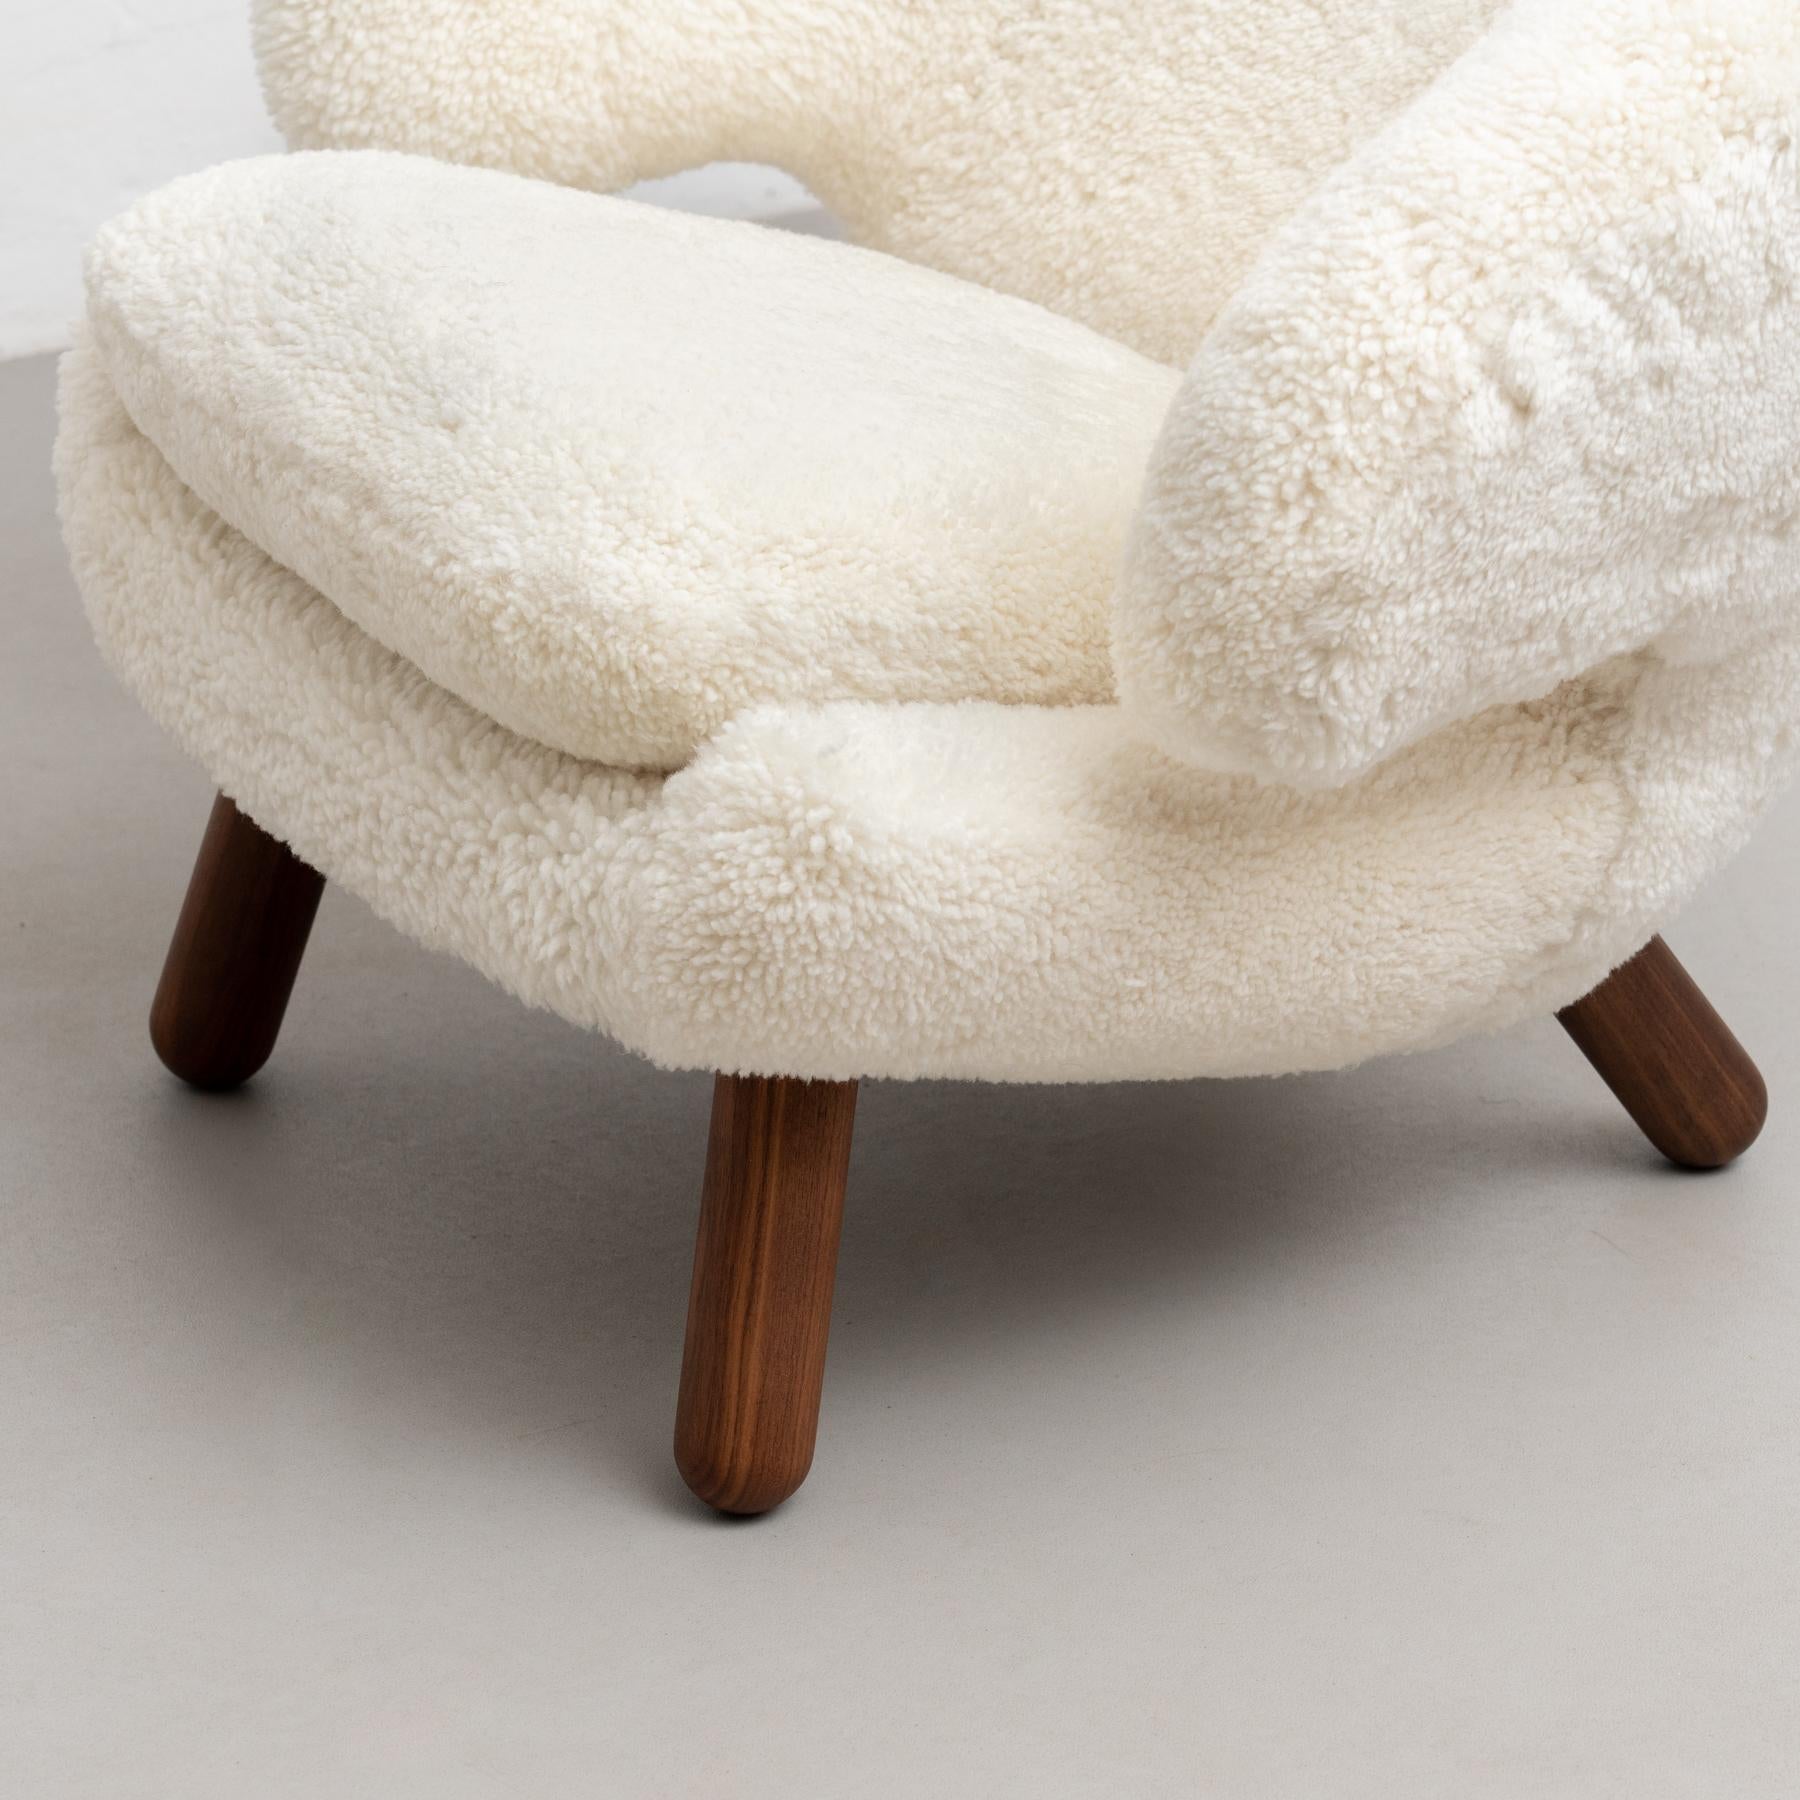 Finn Juhl Pelican Chair Upholstered in Offwhite Sheepskin For Sale 5